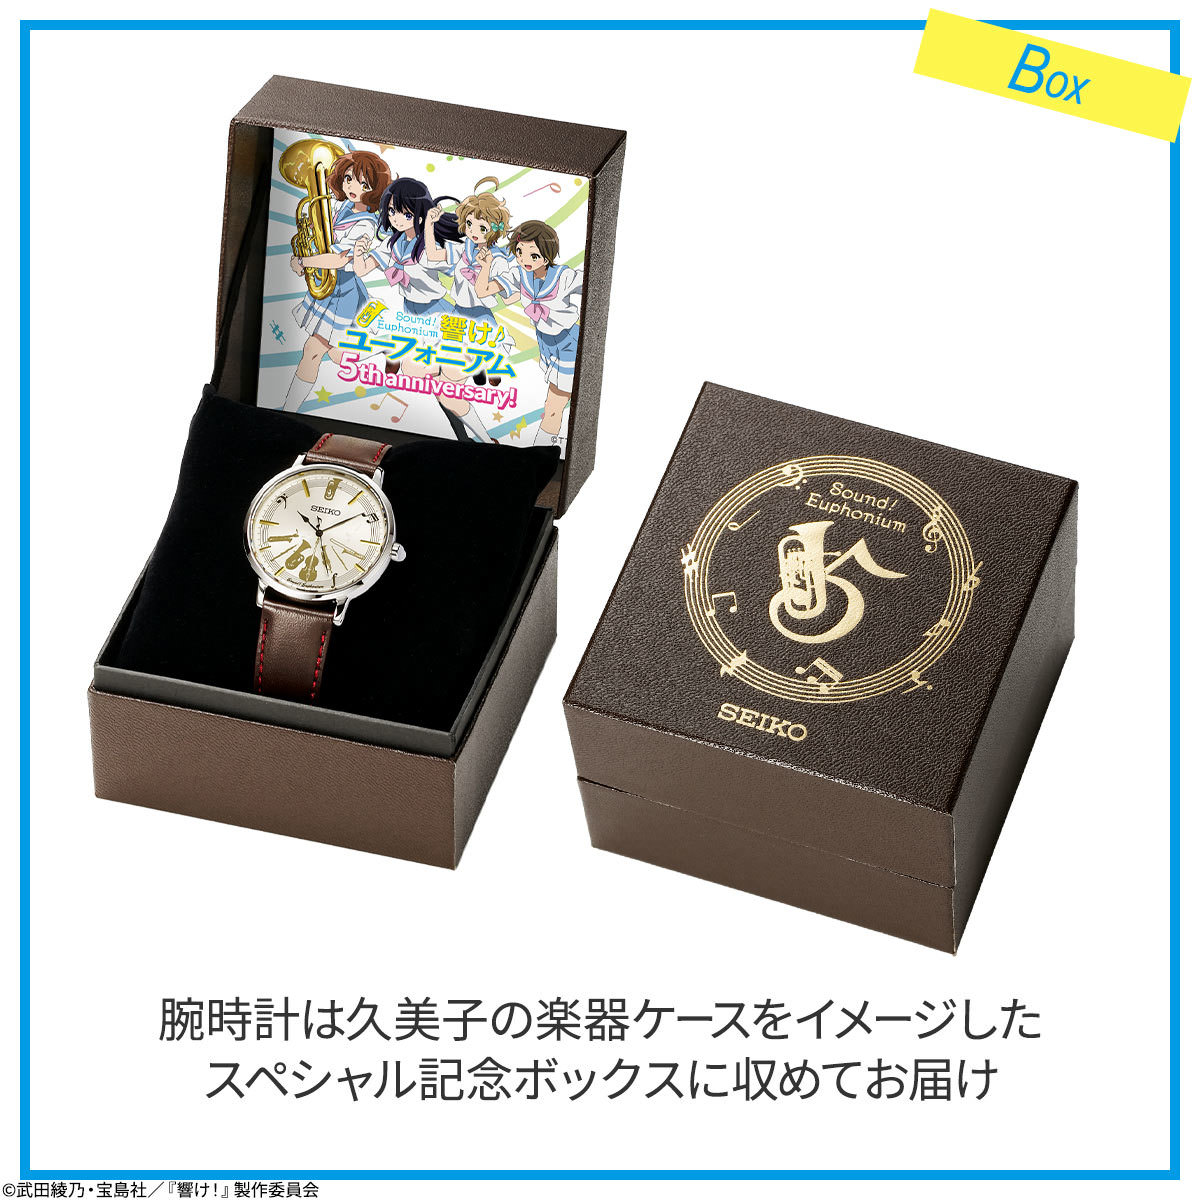 腕時計(アナログ)SEIKO セイコー 響けユーフォニアム 5周年記念 コラボ腕時計2500点限定